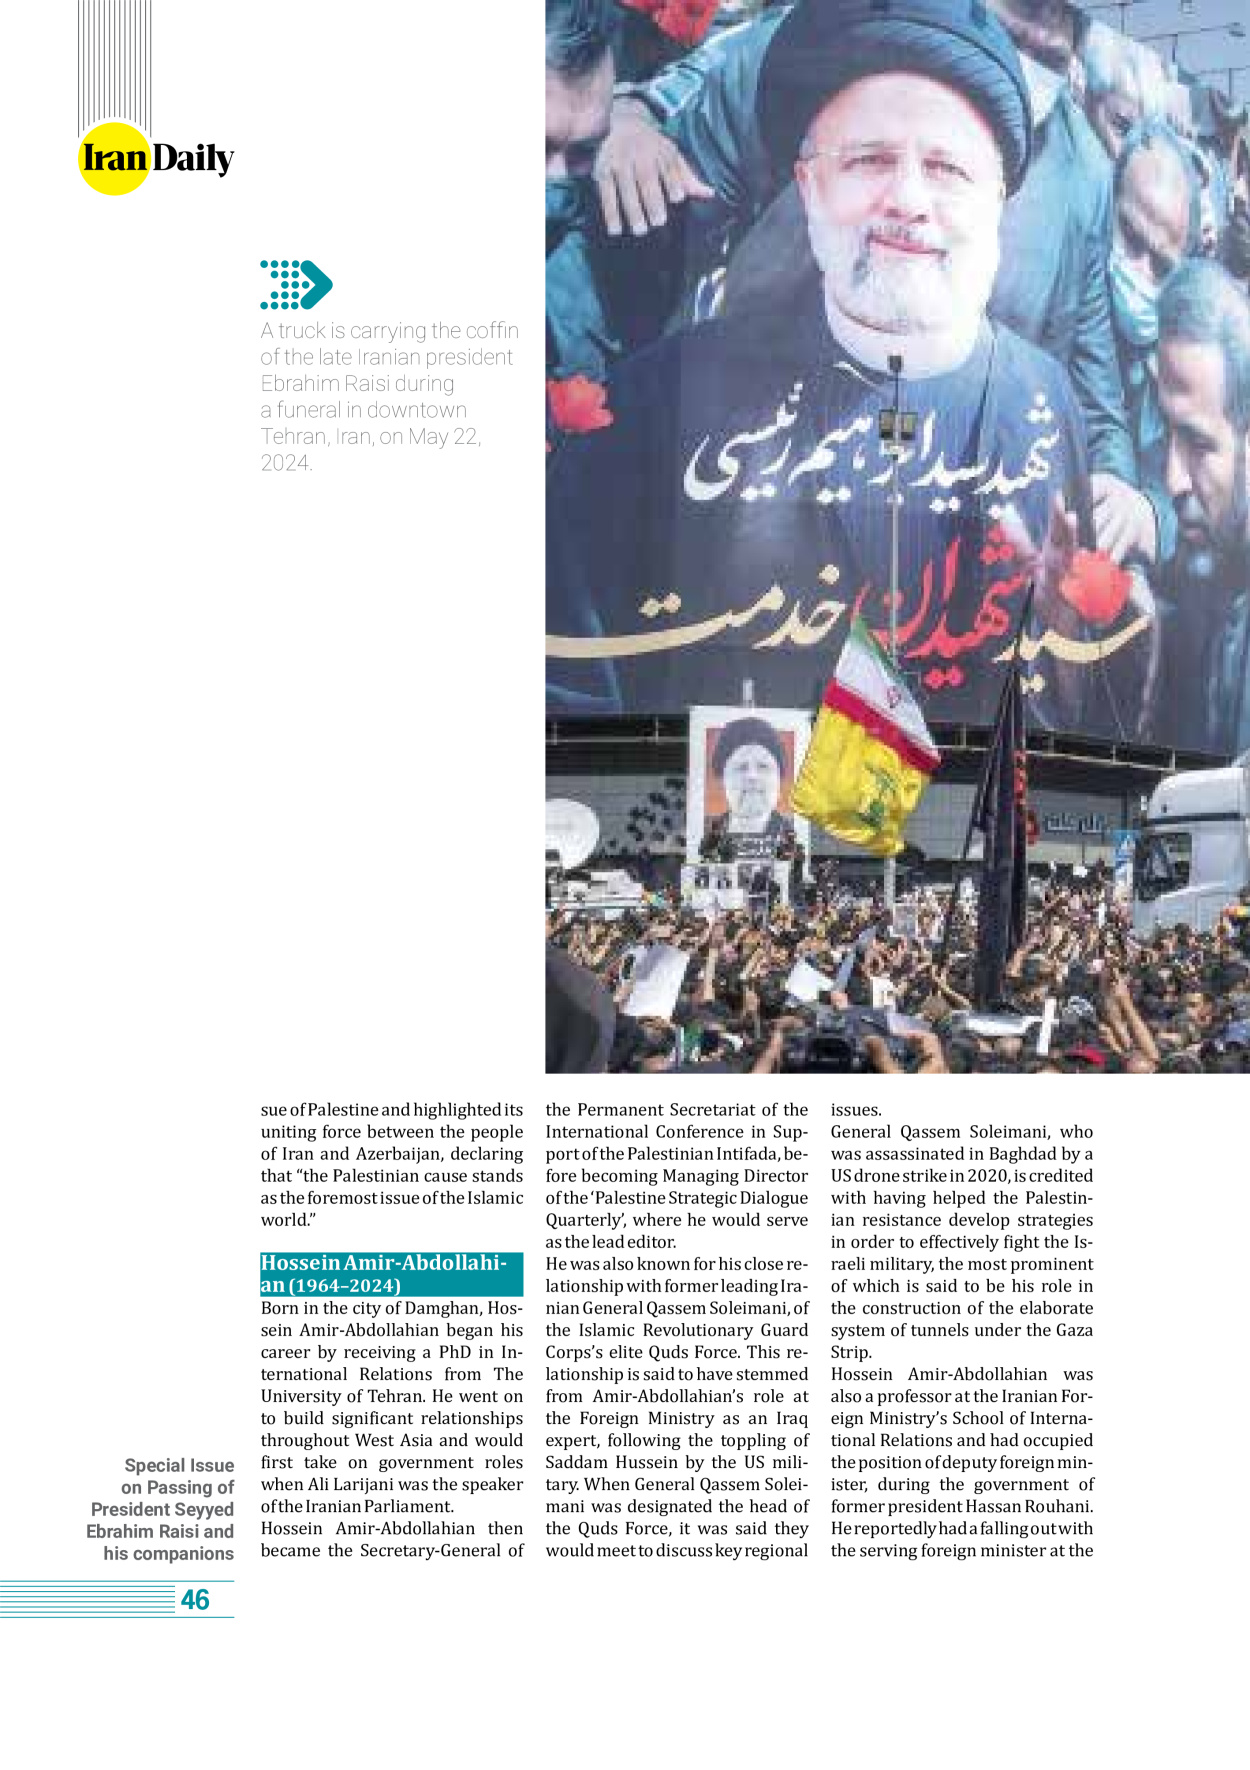 روزنامه ایران - ویژه نامه وِزه نامه چهلم شهید رییسی( انگلیسی) - ۱۷ تیر ۱۴۰۳ - صفحه ۴۶